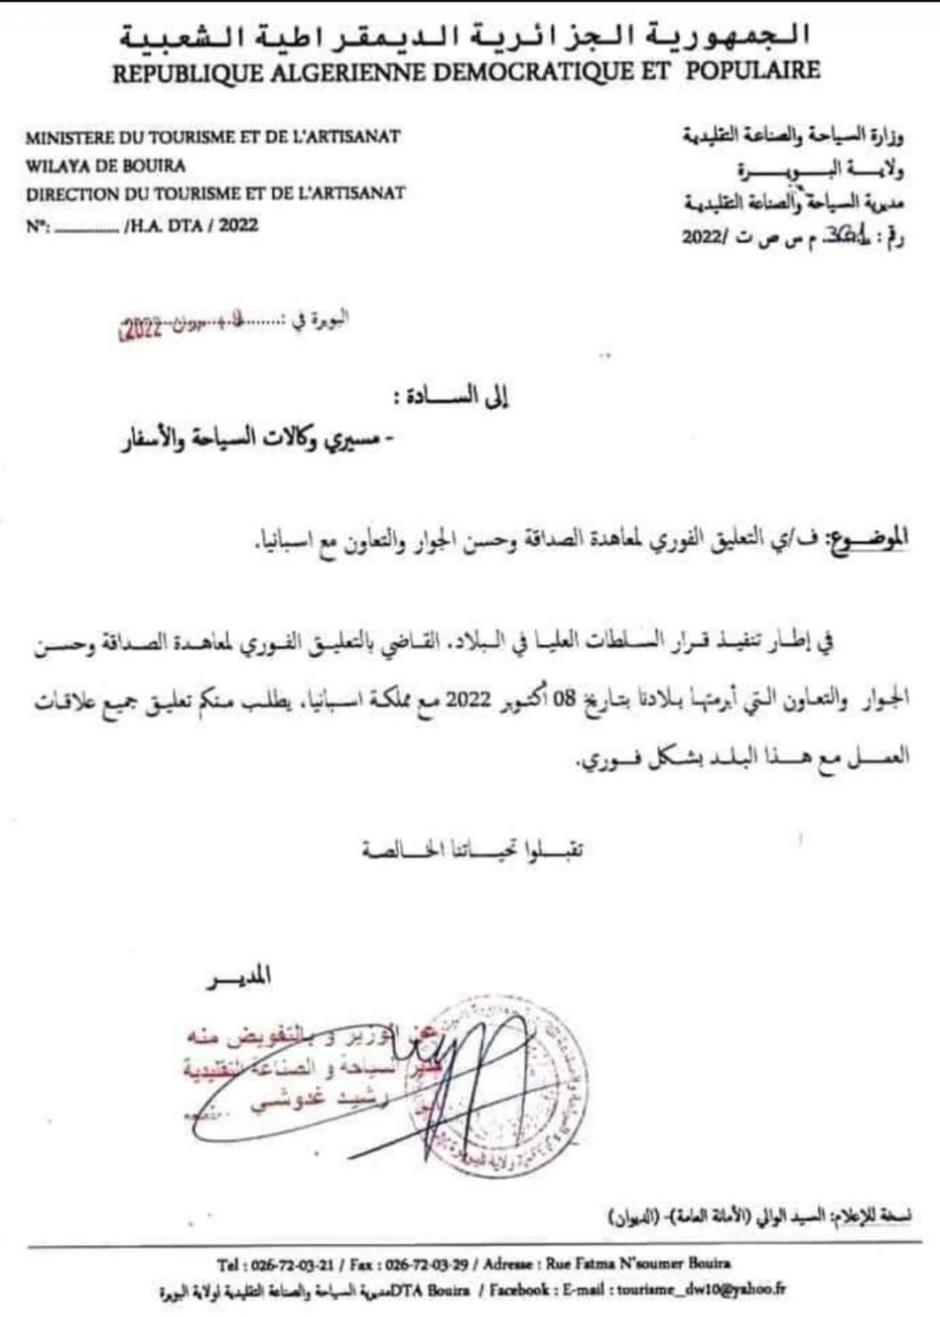 Carta enviada por el ministerio argelino a sus agencias de viaje